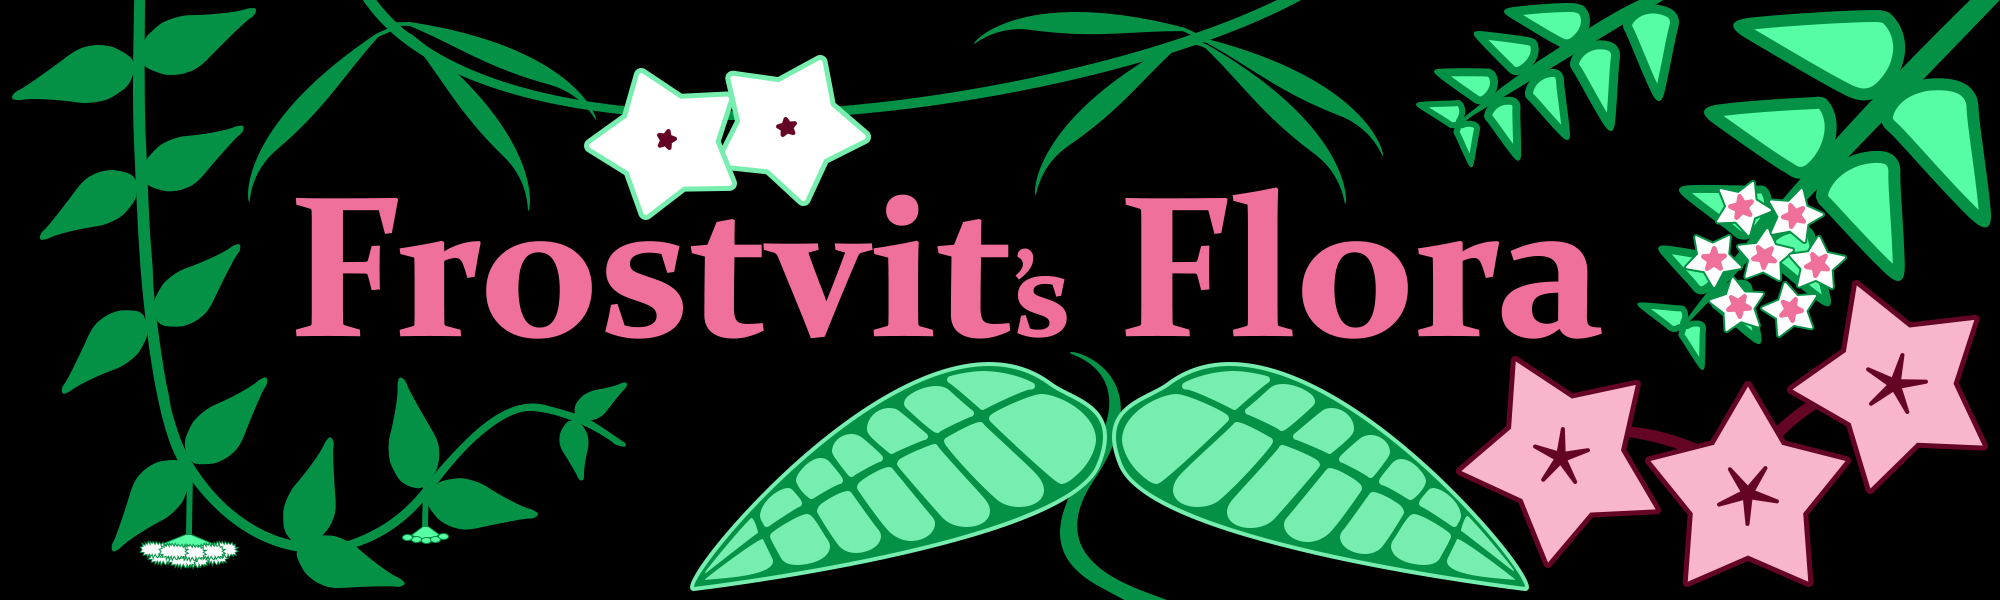 Frostvit's Flora